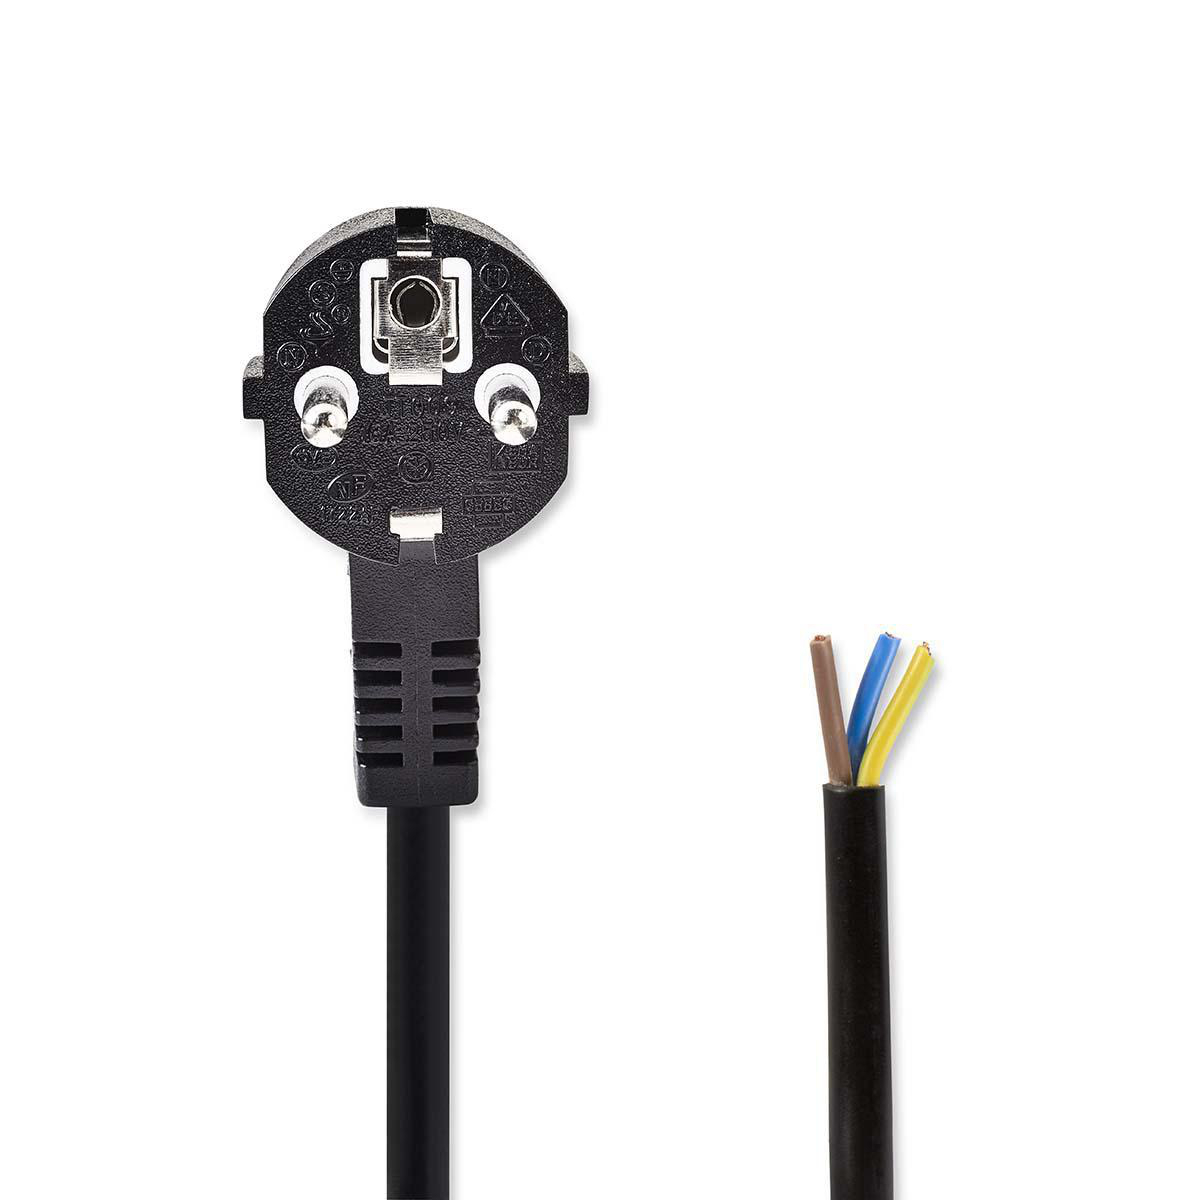 Napájecí flexo kabel UNISCHUKO 3 x 1.00 mm černý, 2 m (PCGP10700BK20)